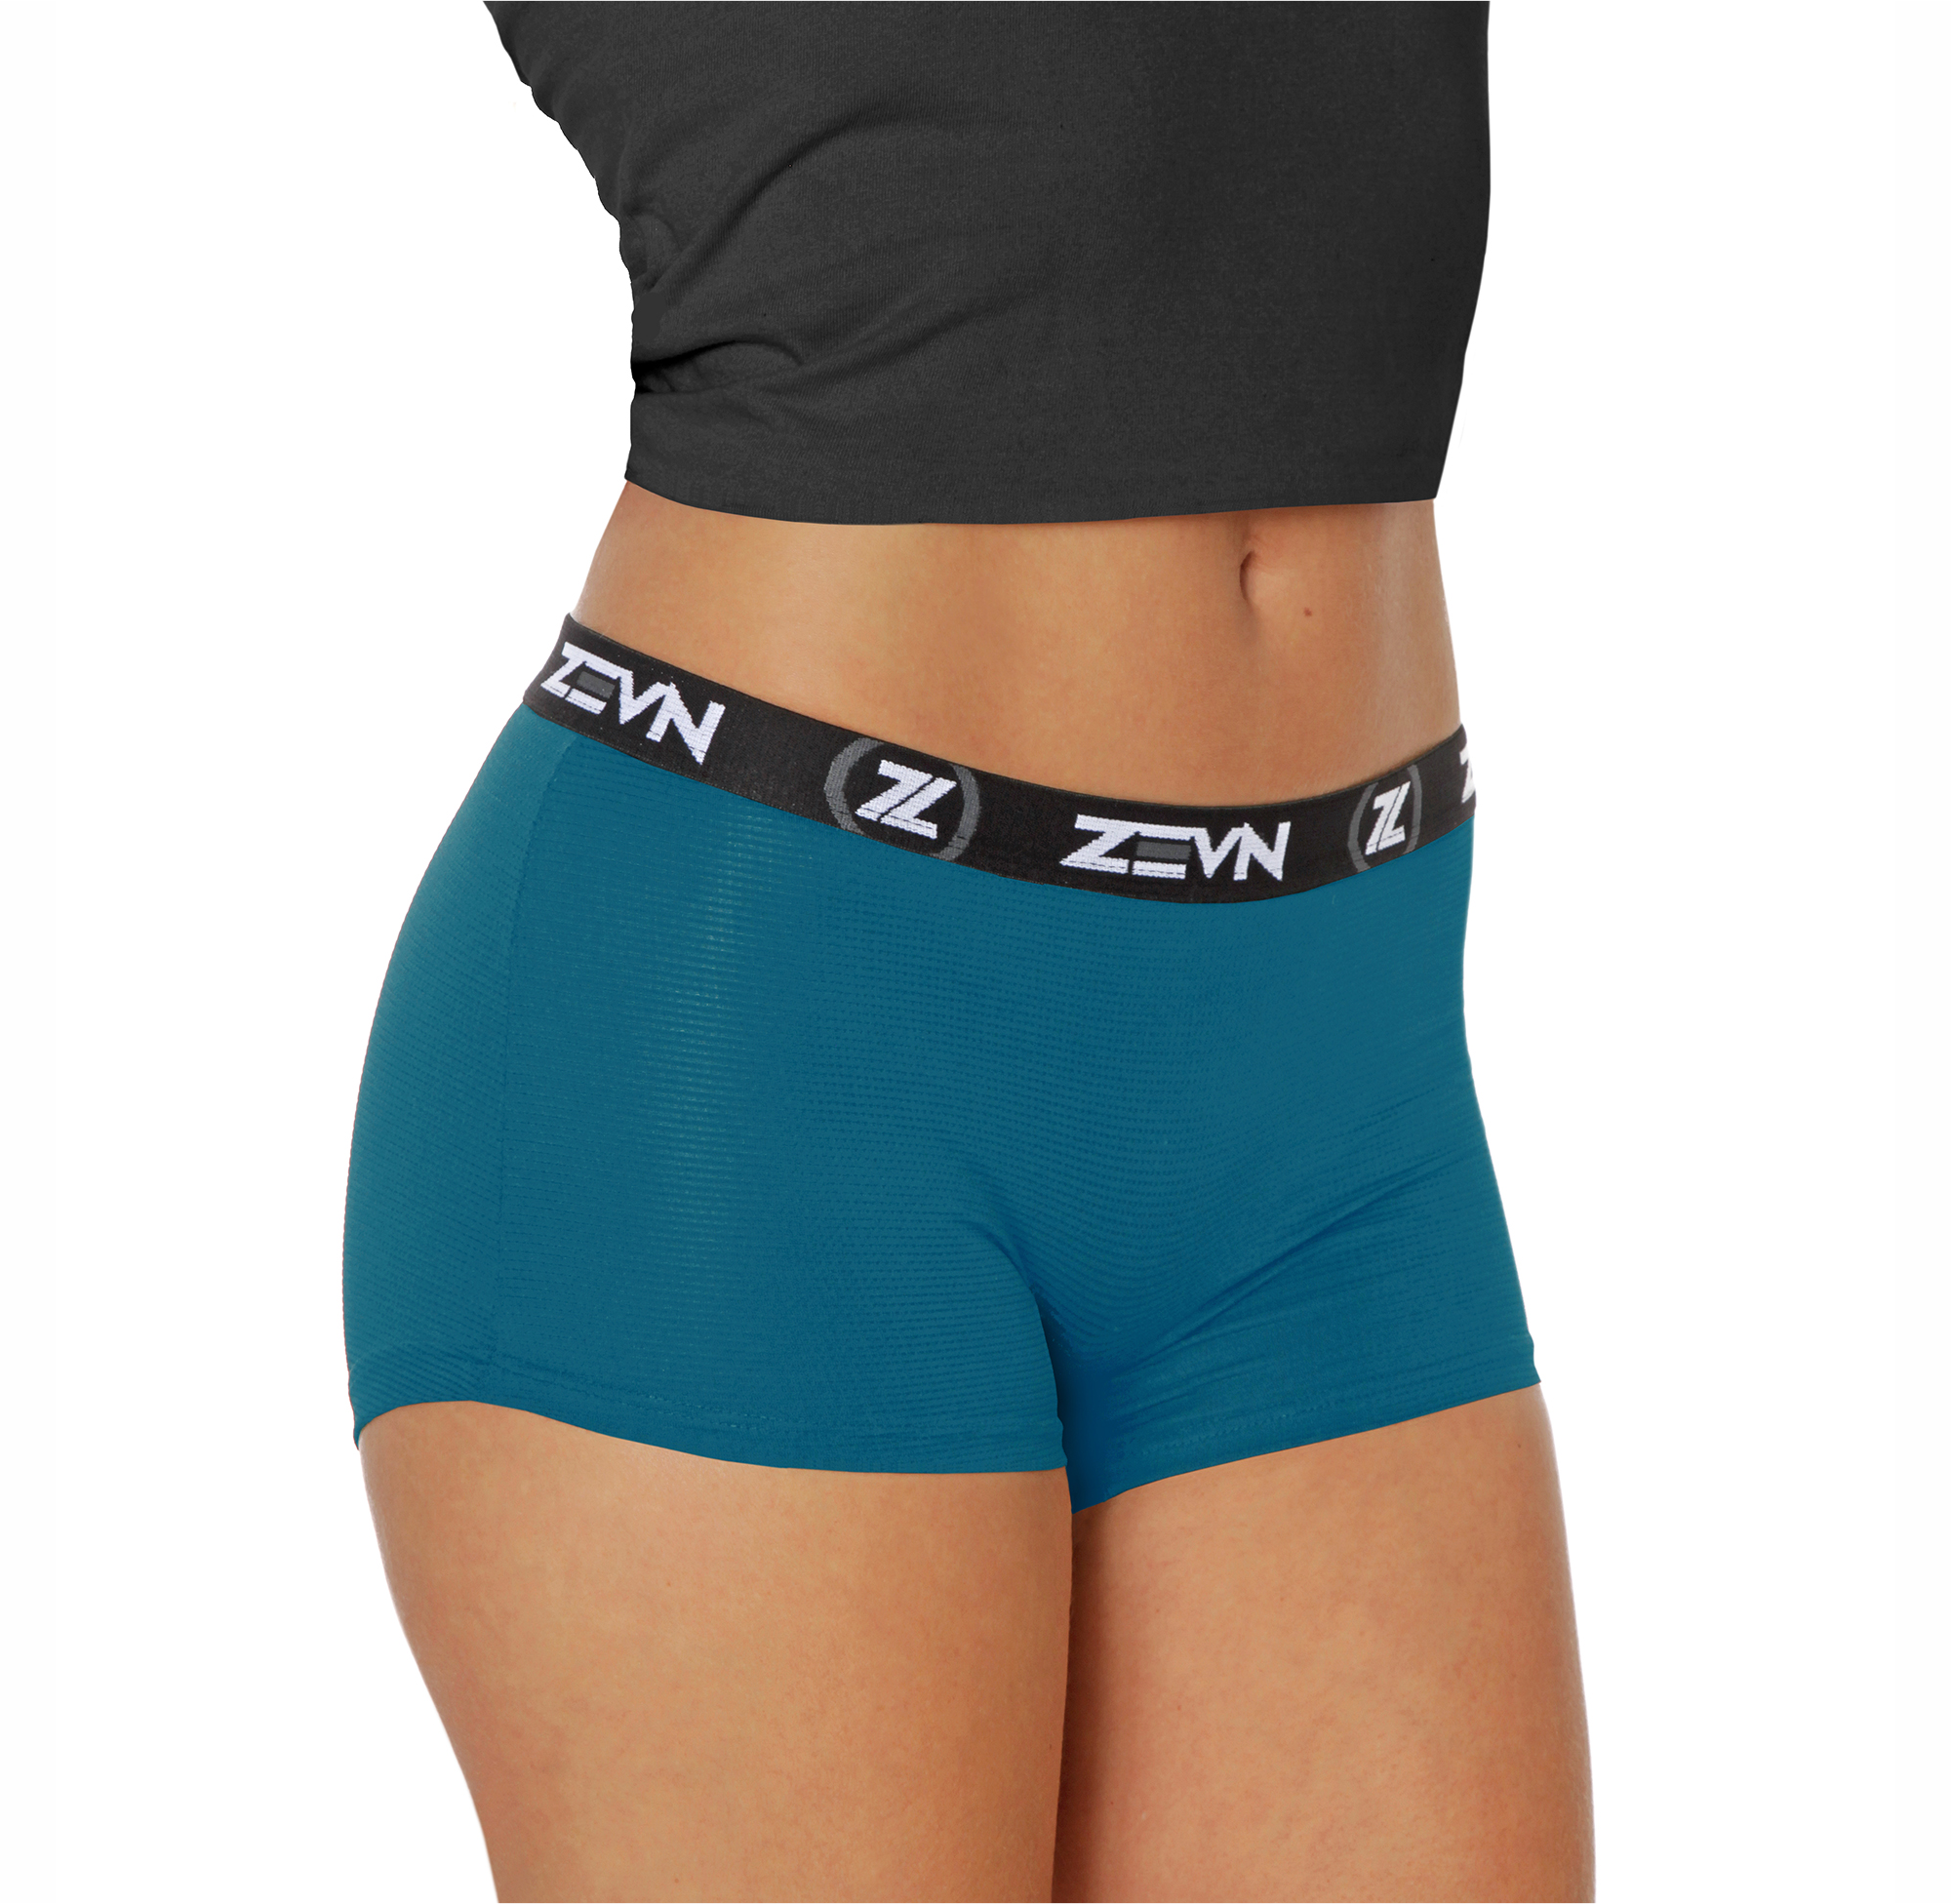 Women's Underwear - Sports Underwear for Her